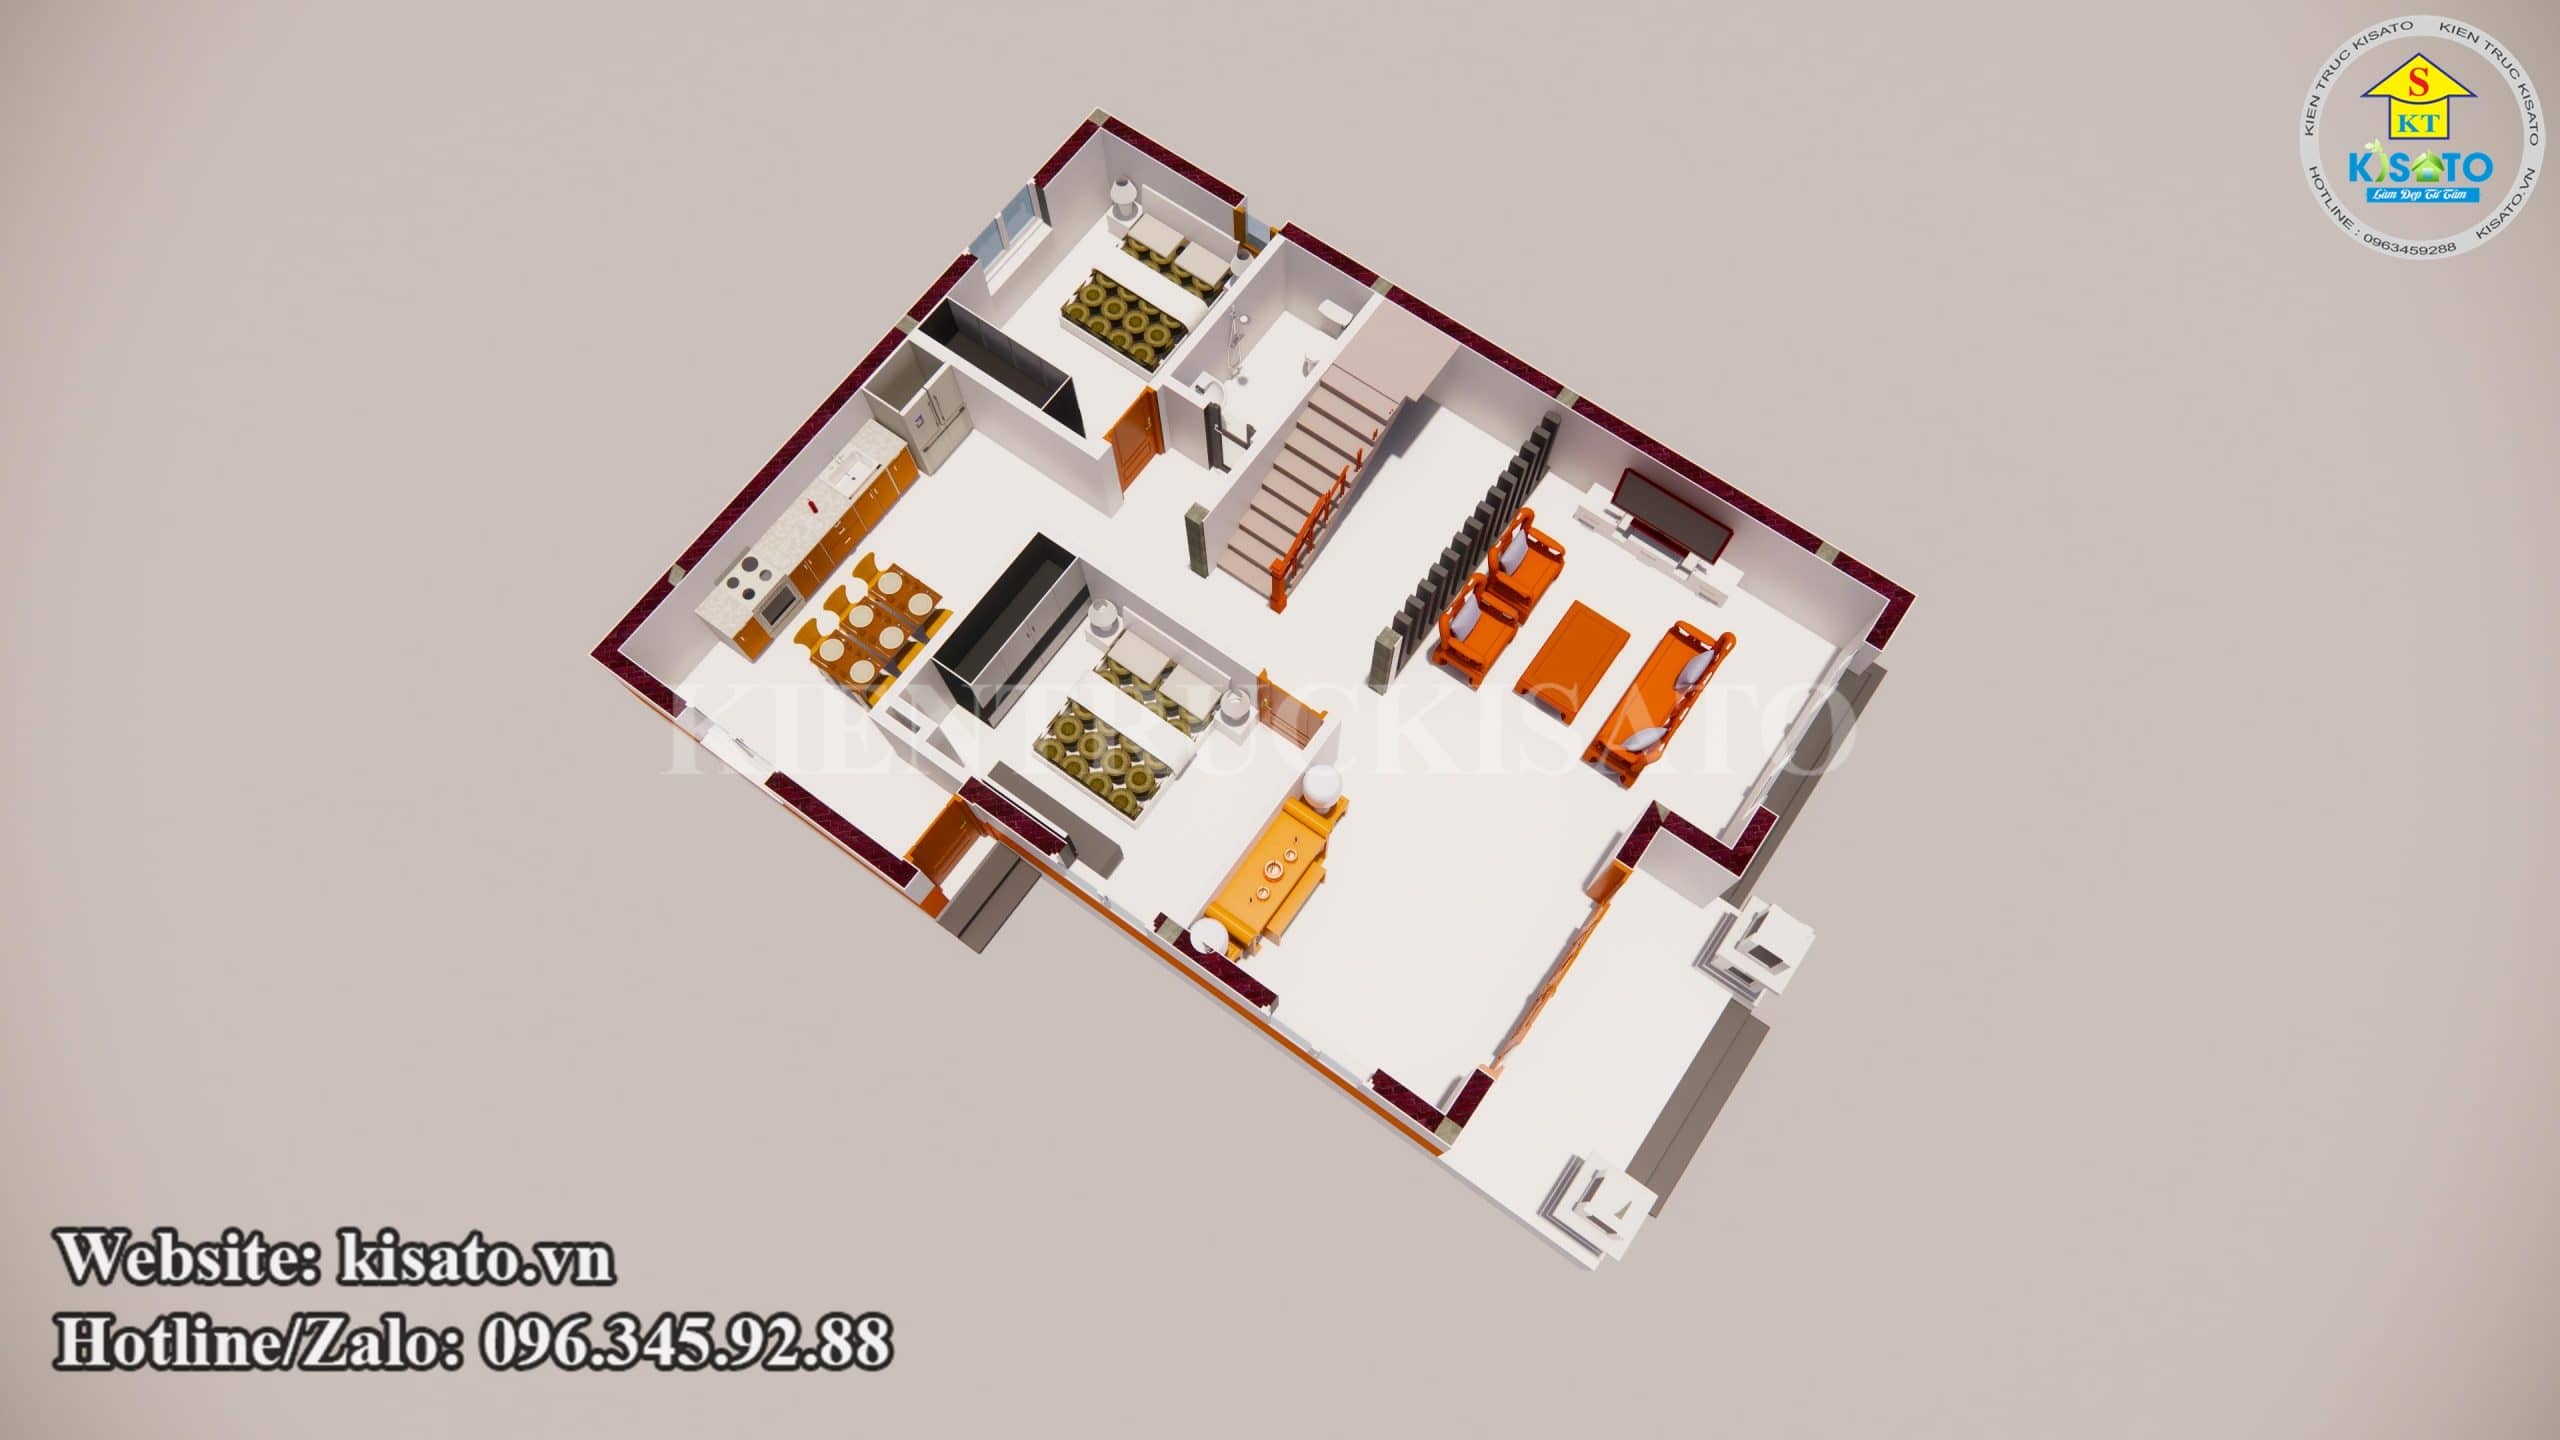 Hình ảnh 3D mặt bằng công năng tầng 1 mẫu biệt thự 2 tầng 5 phòng ngủ đẹp tại Bắc Ninh